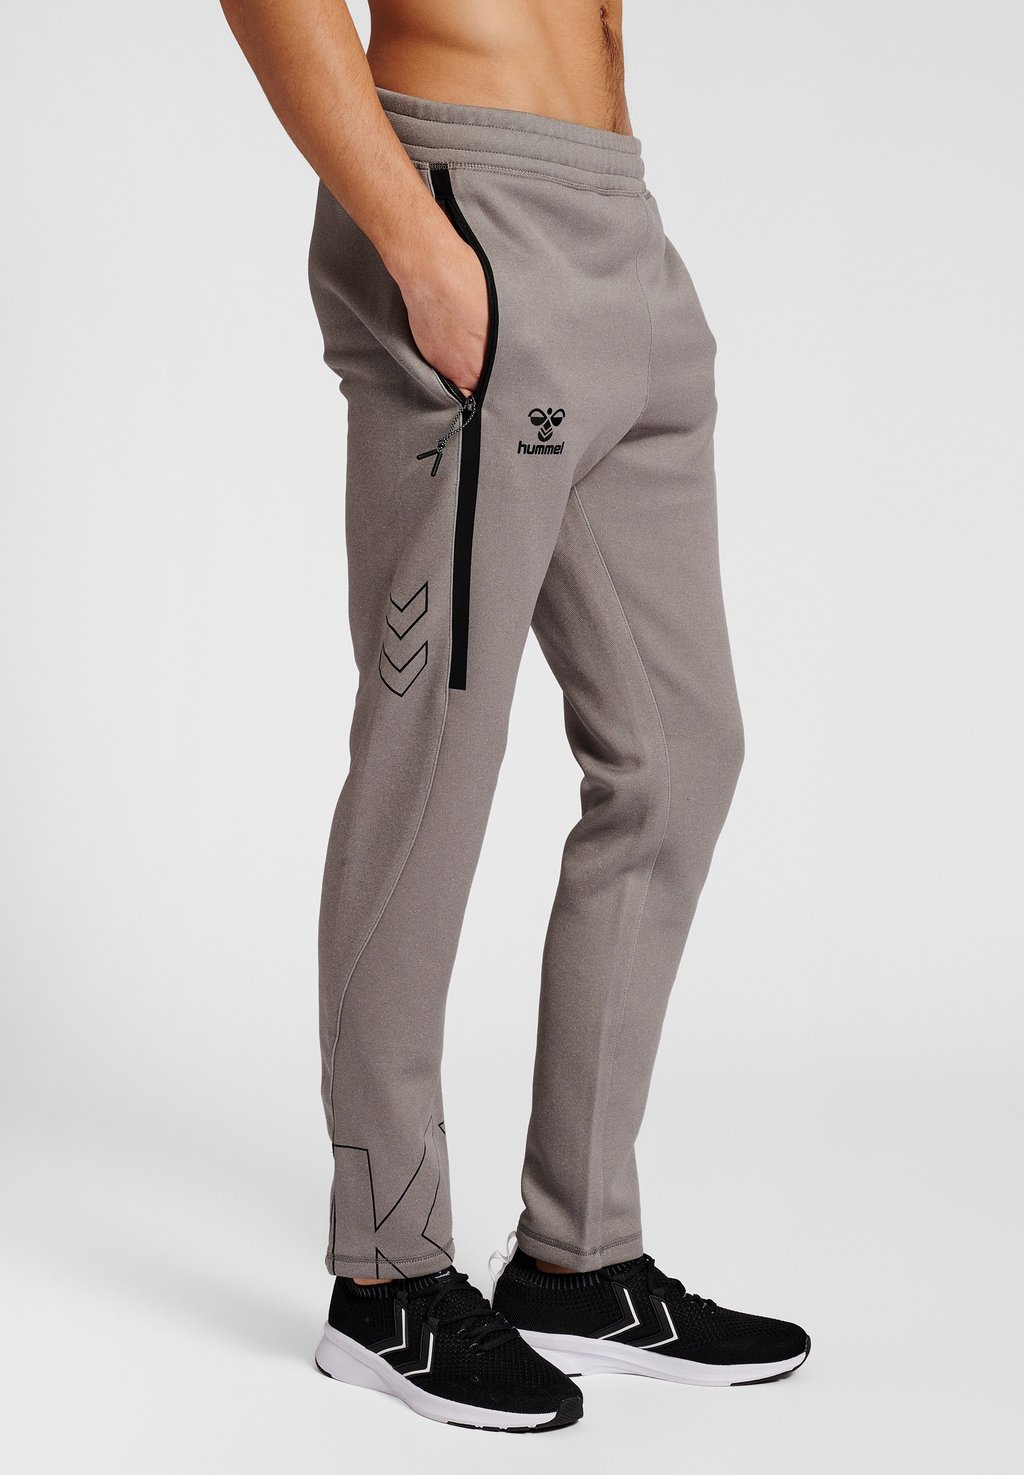 Спортивные брюки Hummel, серый меланж спортивные брюки kappa серый меланж